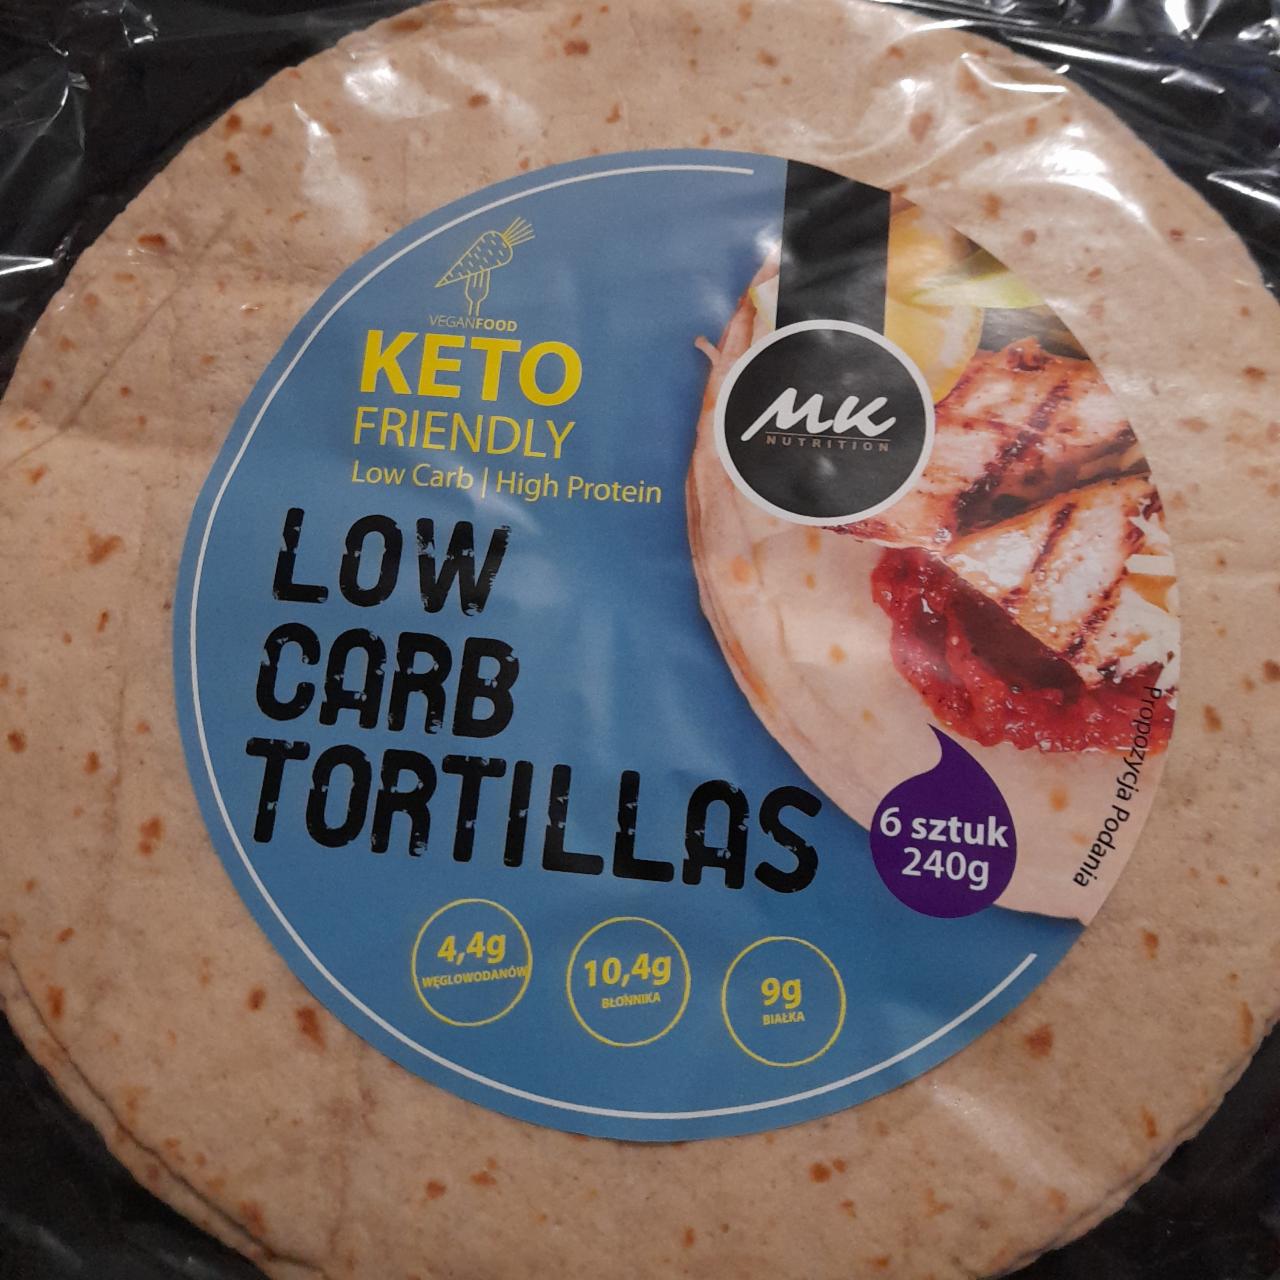 Zdjęcia - Low Carb Tortillas MK Nutrition